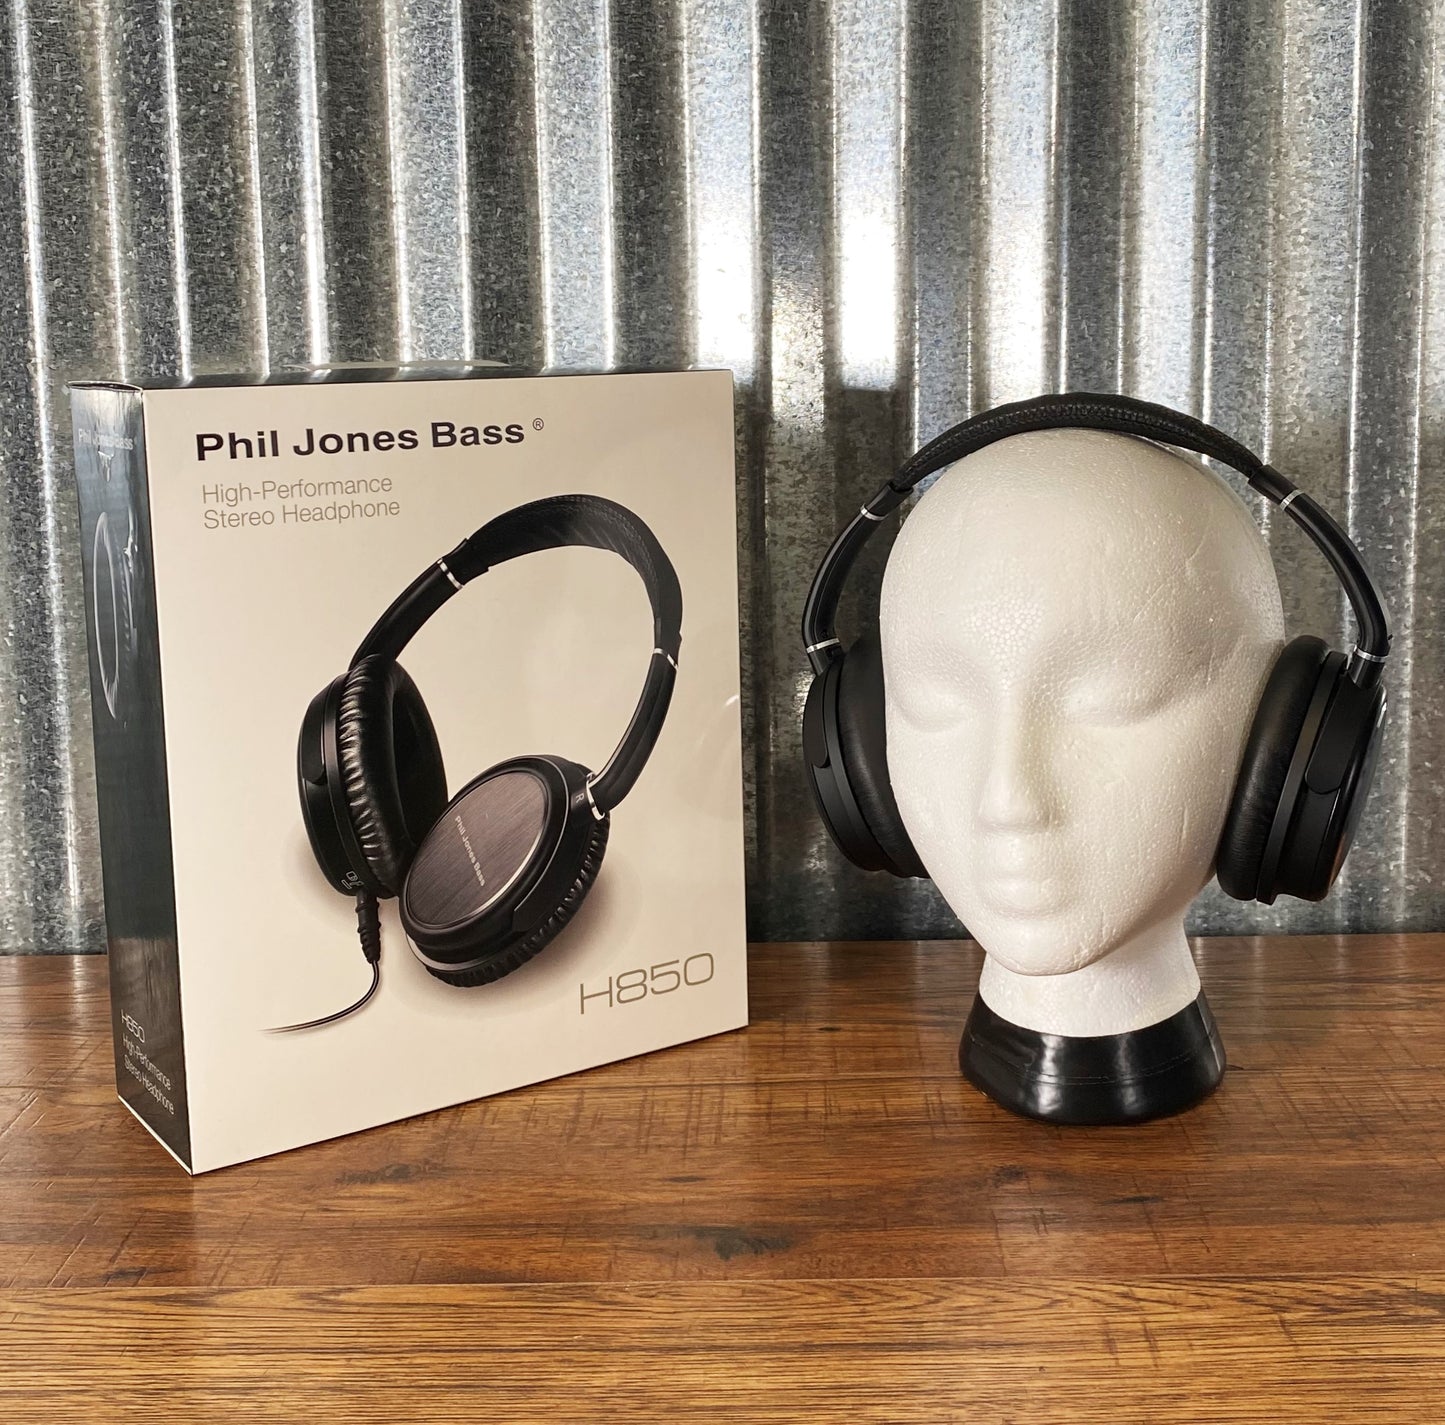 Phil Jones Bass H-850 Full Range 20Hz-20KHz Headphones H850